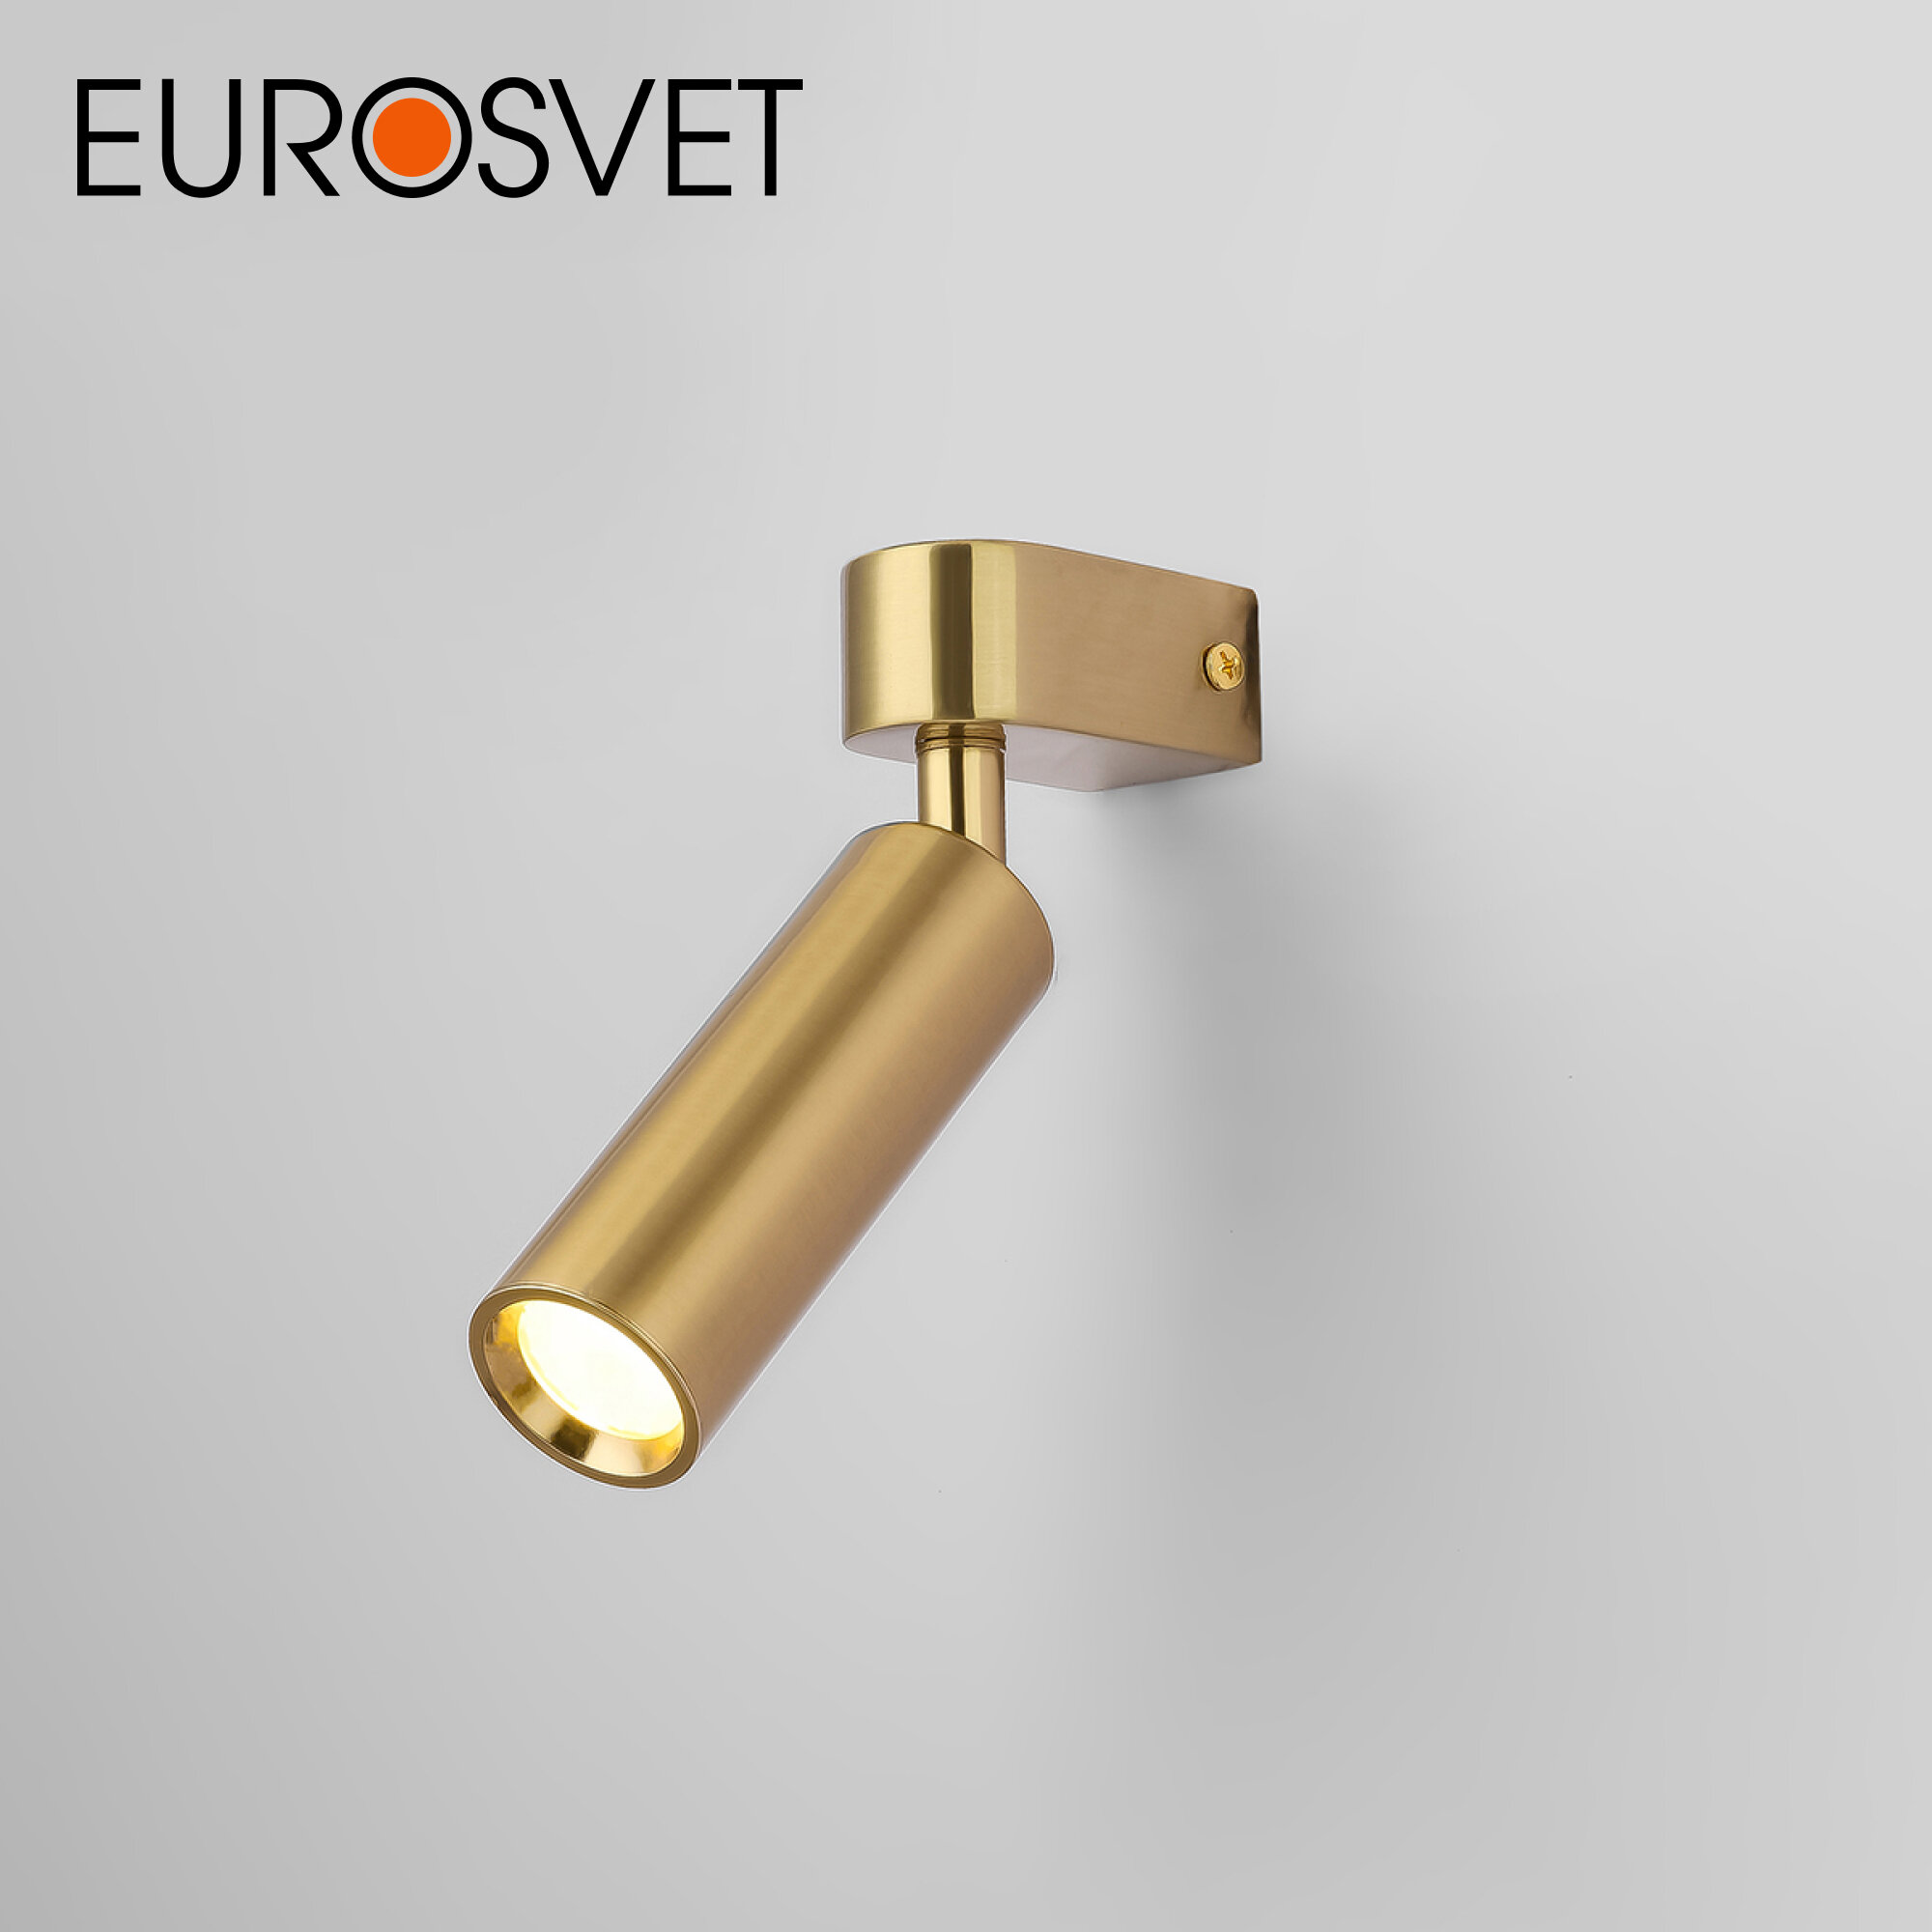 Спот / Настенный светодиодный светильник с поворотным плафоном Eurosvet Pitch 20143/1 LED, 3 Вт, 4200 К, цвет латунь, IP20